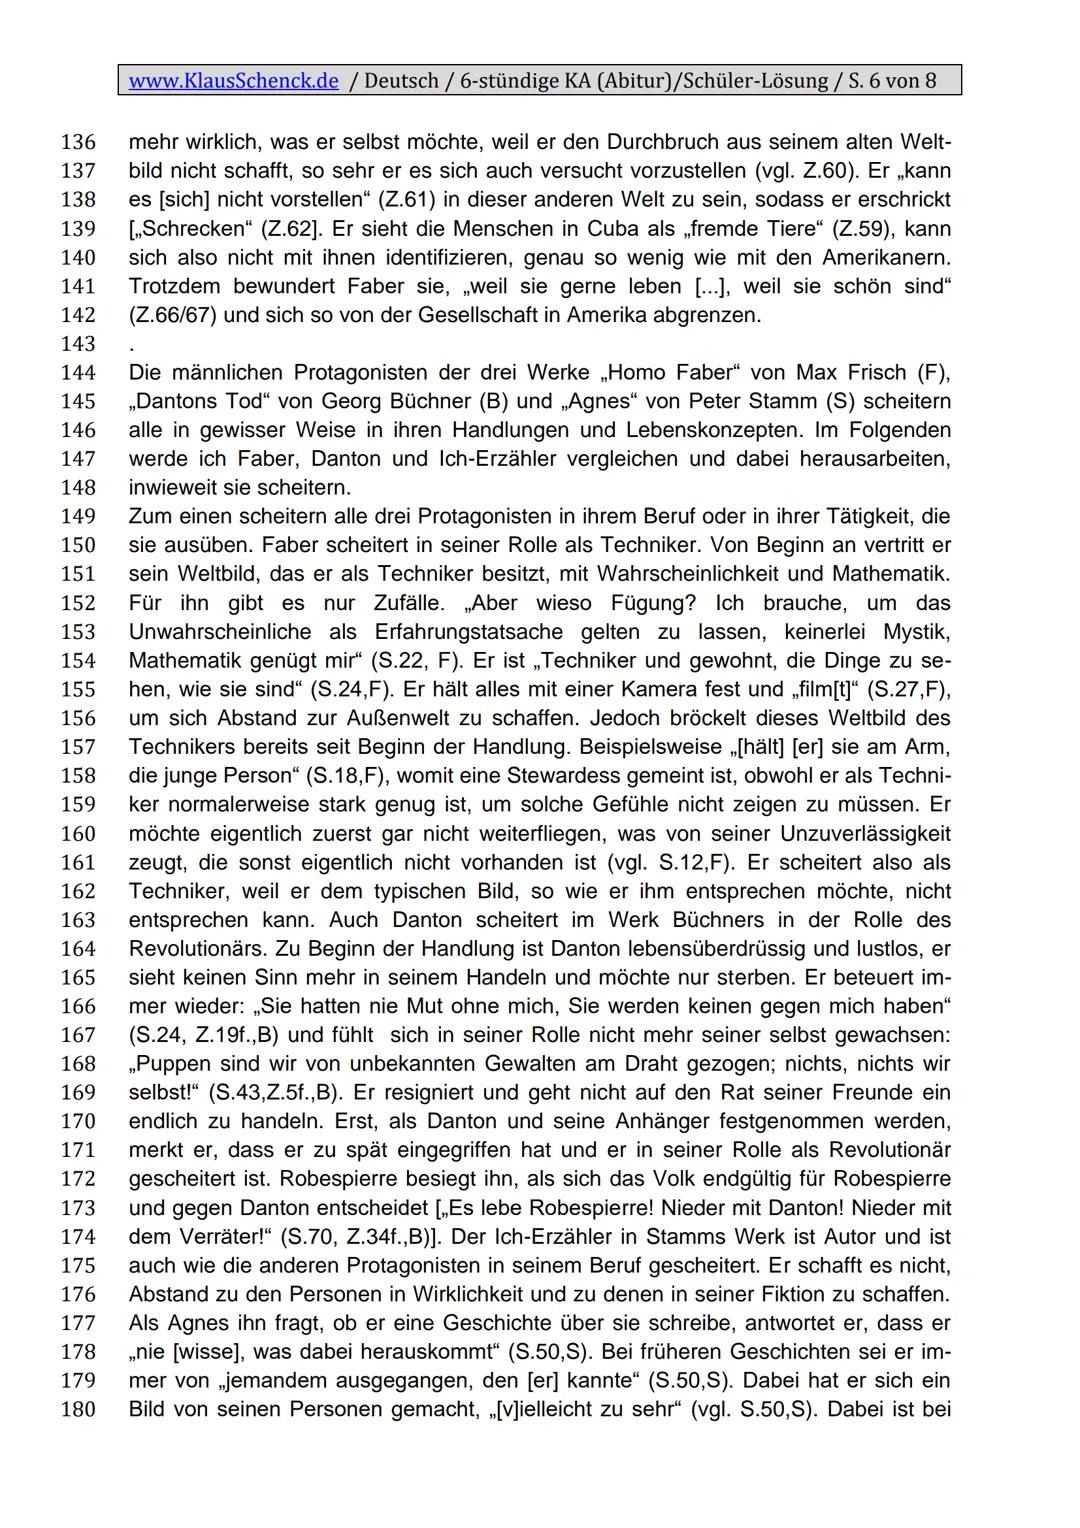 www.KlausSchenck.de / Deutsch / 6-stündige KA (Abitur)/Schüler-Lösung / S. 1 von 8
Klassenarbeitsaufbau
Einleitung
1. Zitat
2. Autor, Titel,